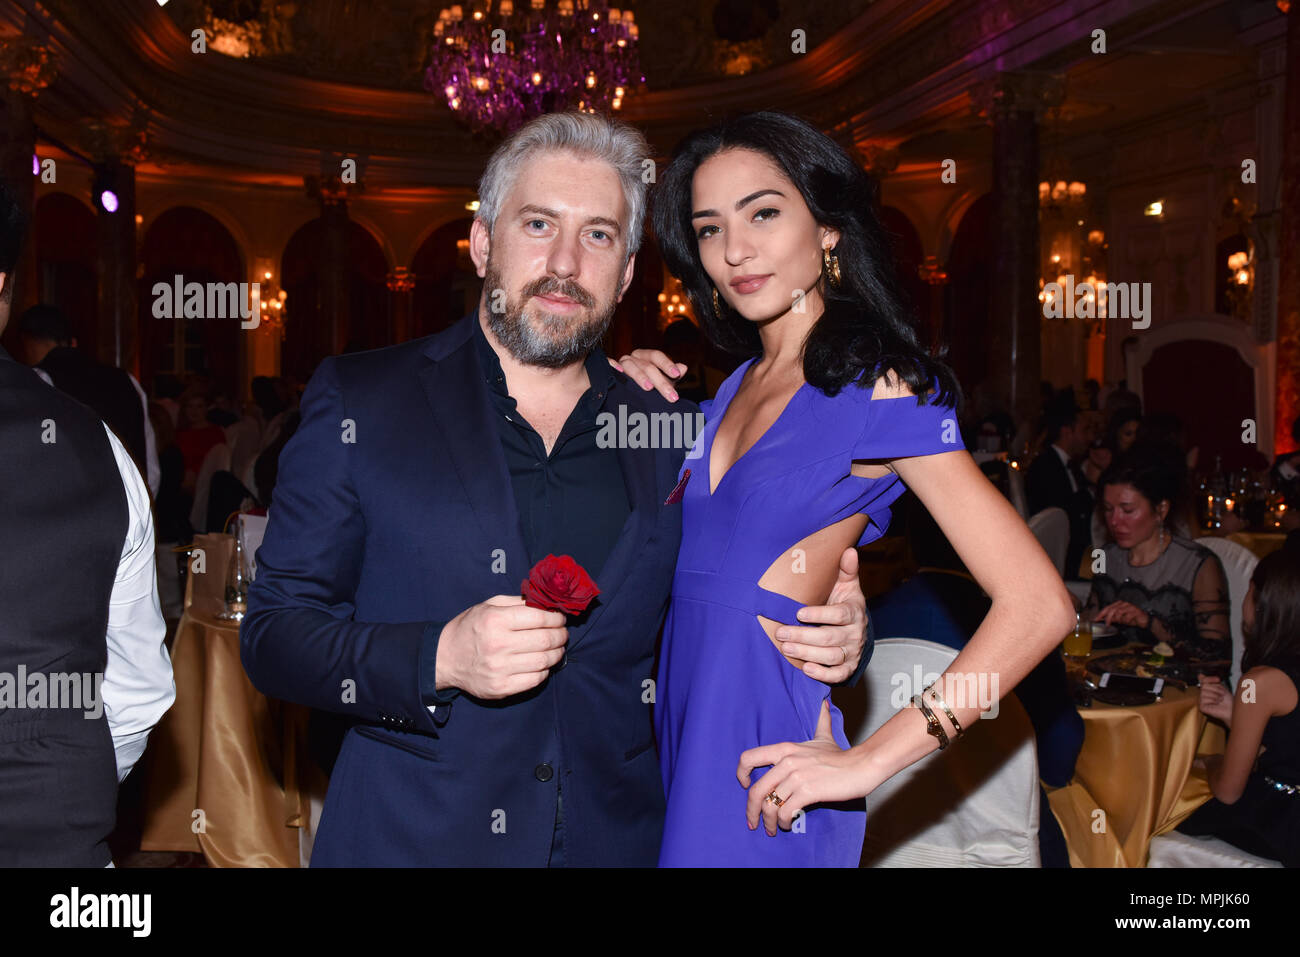 MONTE-CARLO, Mónaco - Diciembre 31, 2017: Vadim Blaustein y modelo brasileña Jessica Samea en Hôtel Hermitage Monte-Carlo Foto de stock